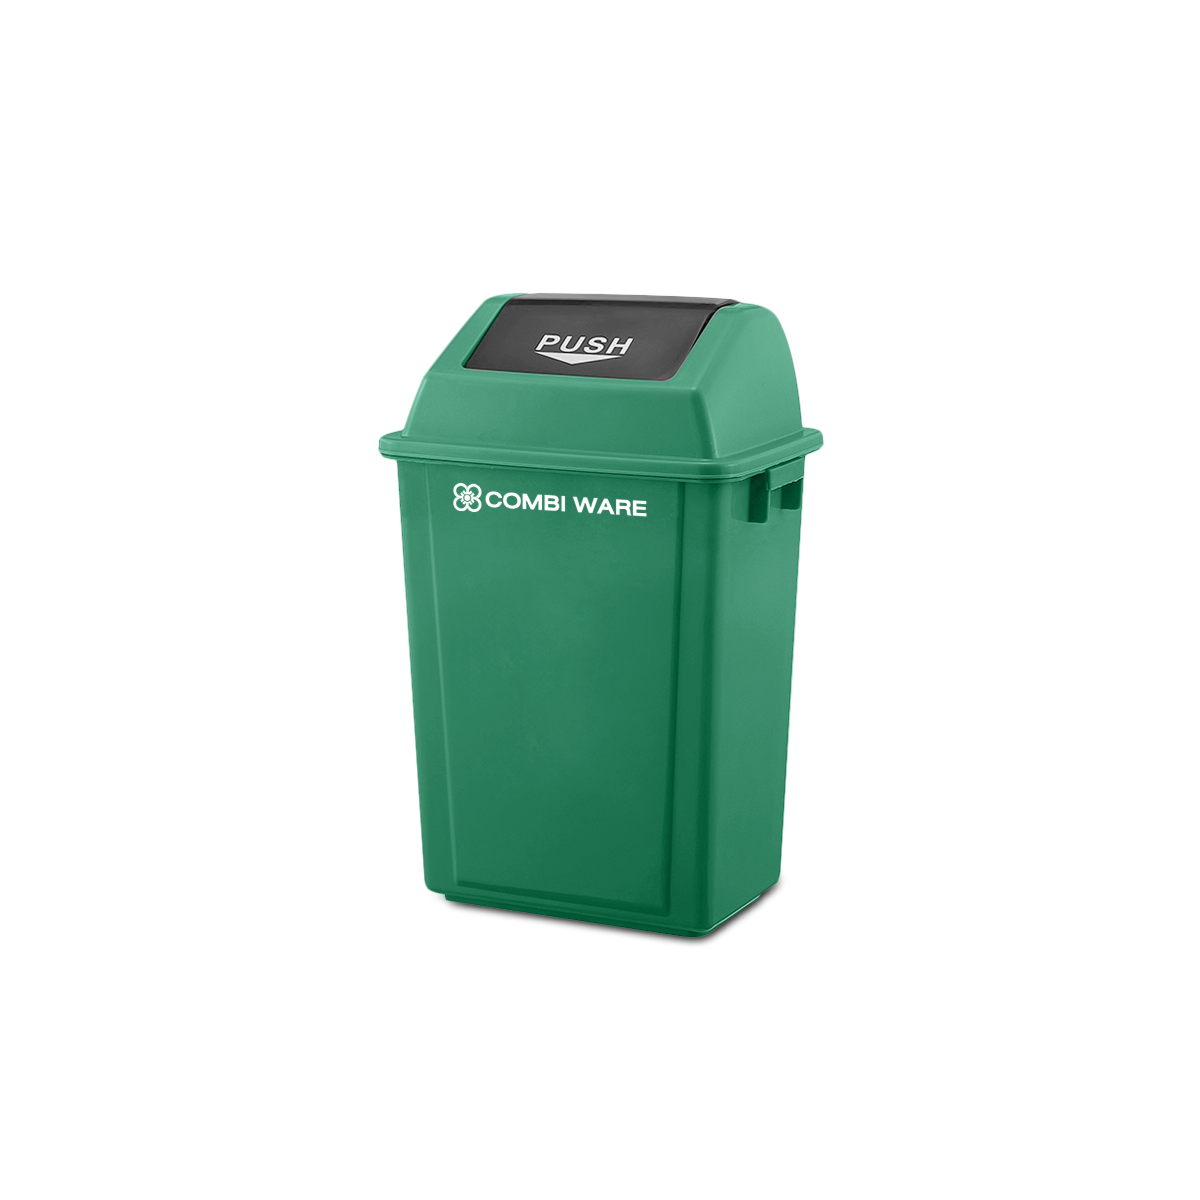 ถังขยะพลาสติก ขนาด 30 ลิตร แบบฝาผลัก สีเขียว